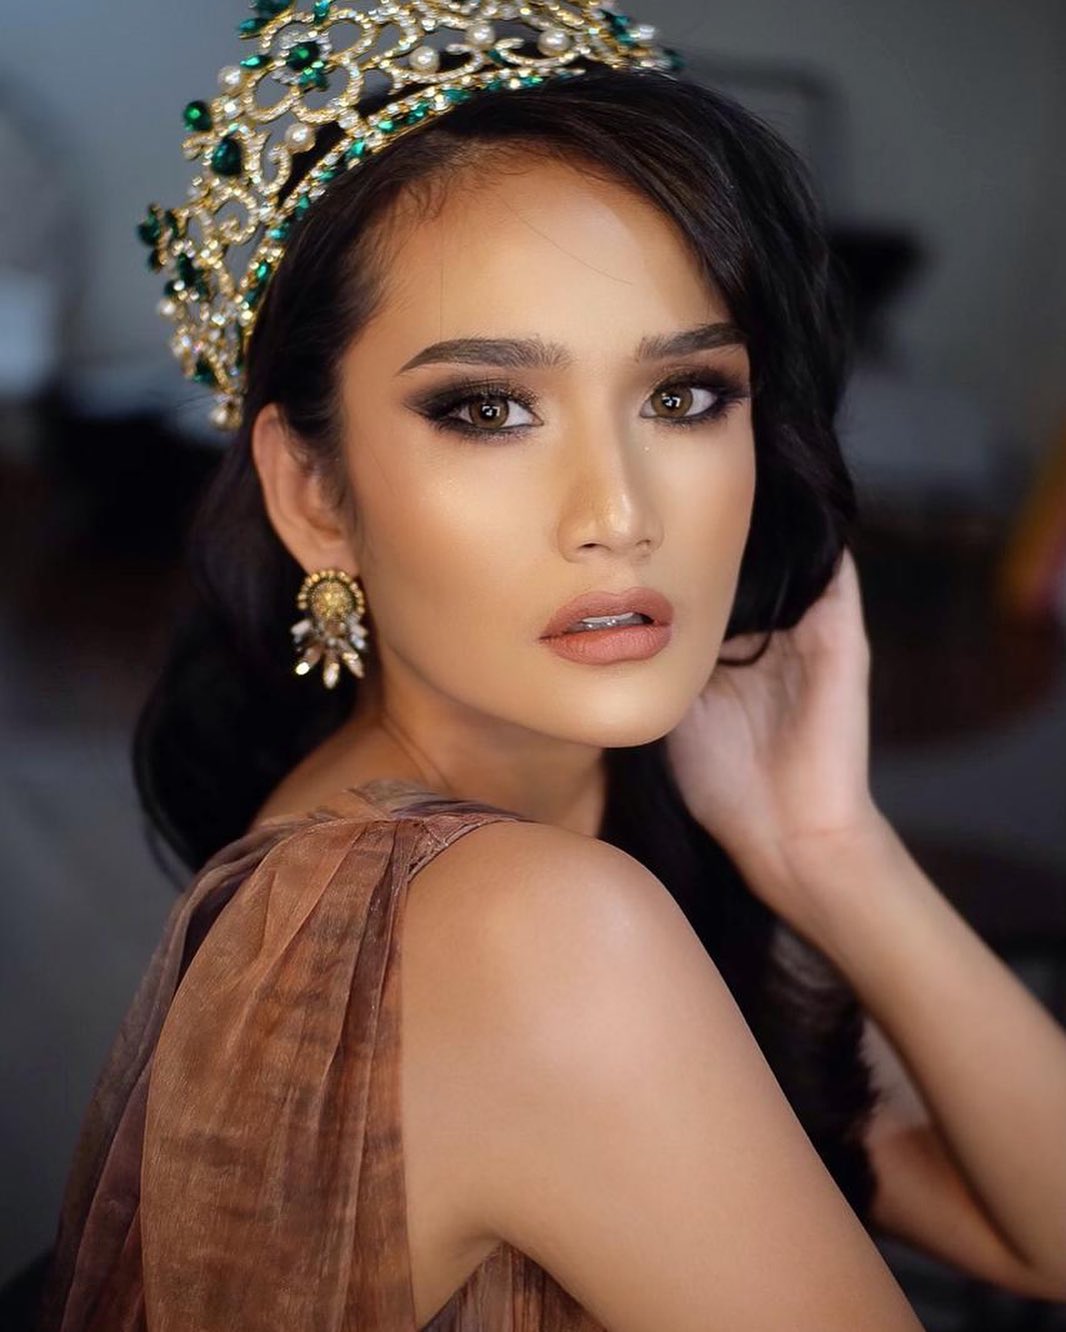 Miss eco indonesia 2021